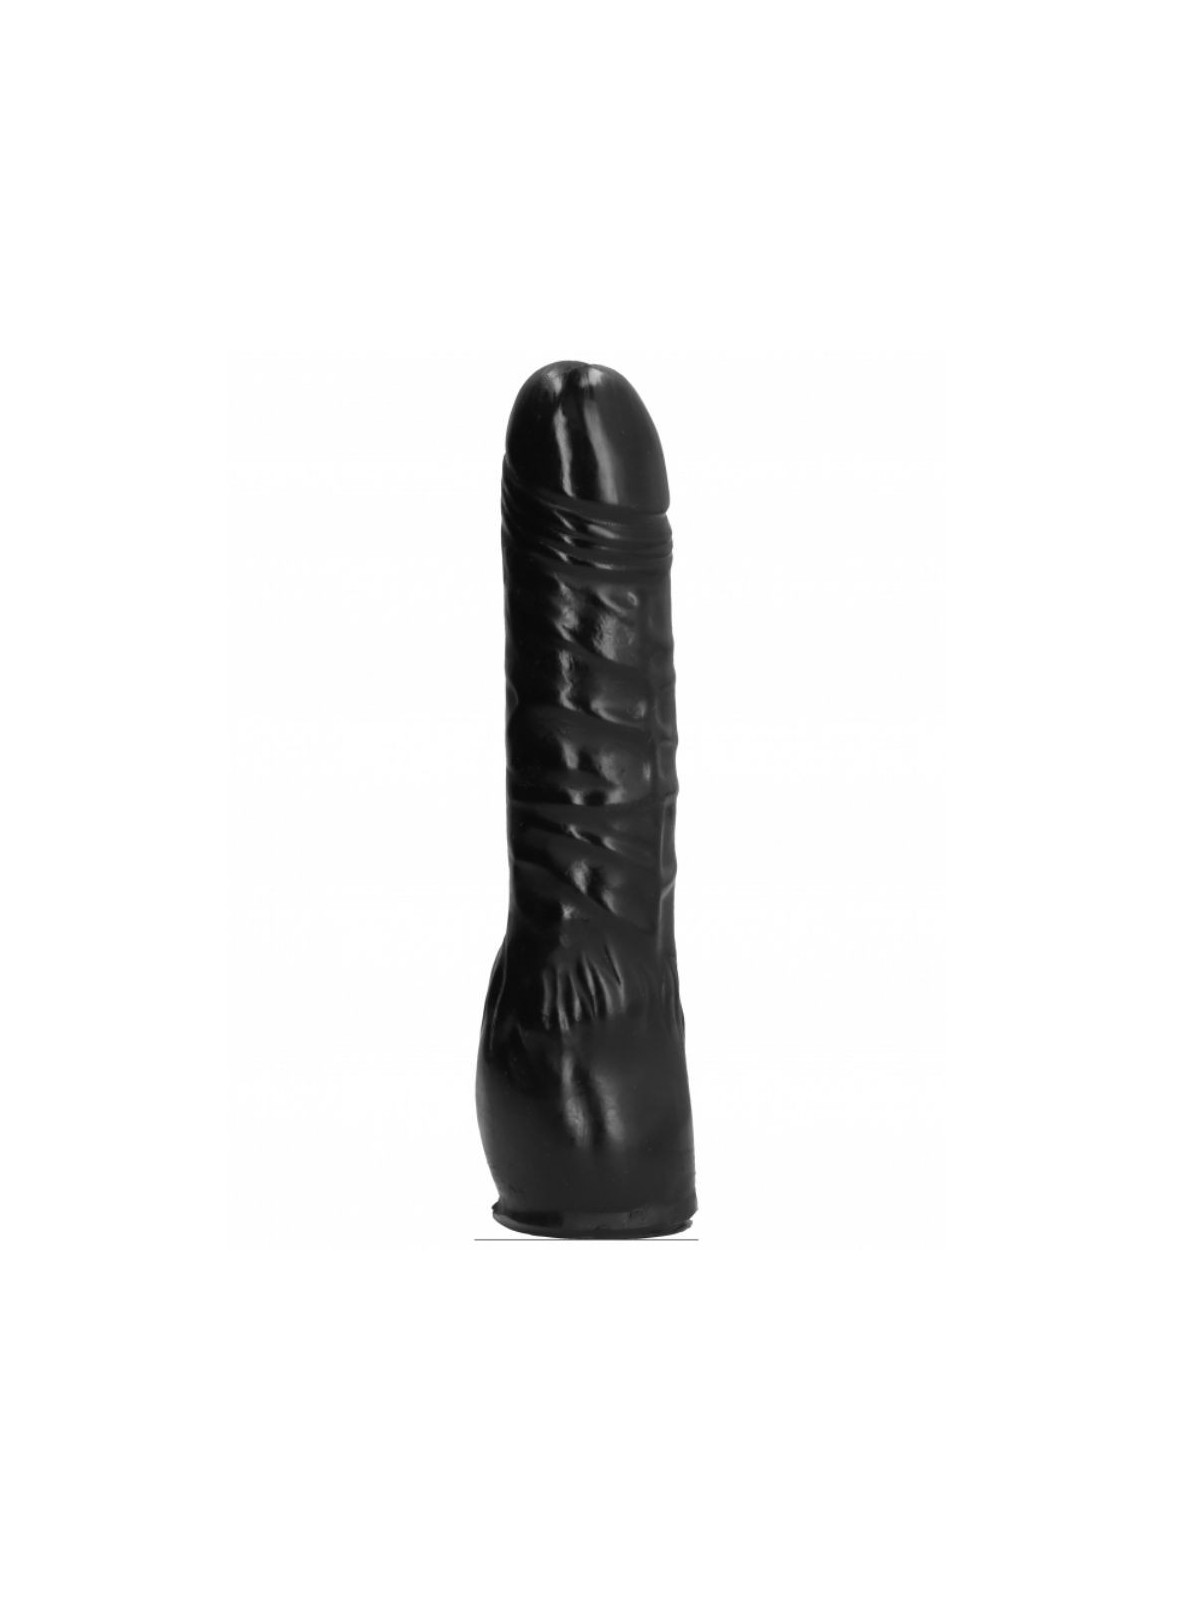 All Black Dildo Negro Realístico 20 cm - Comprar Dildo gigante All Black - Penes realistas (1)